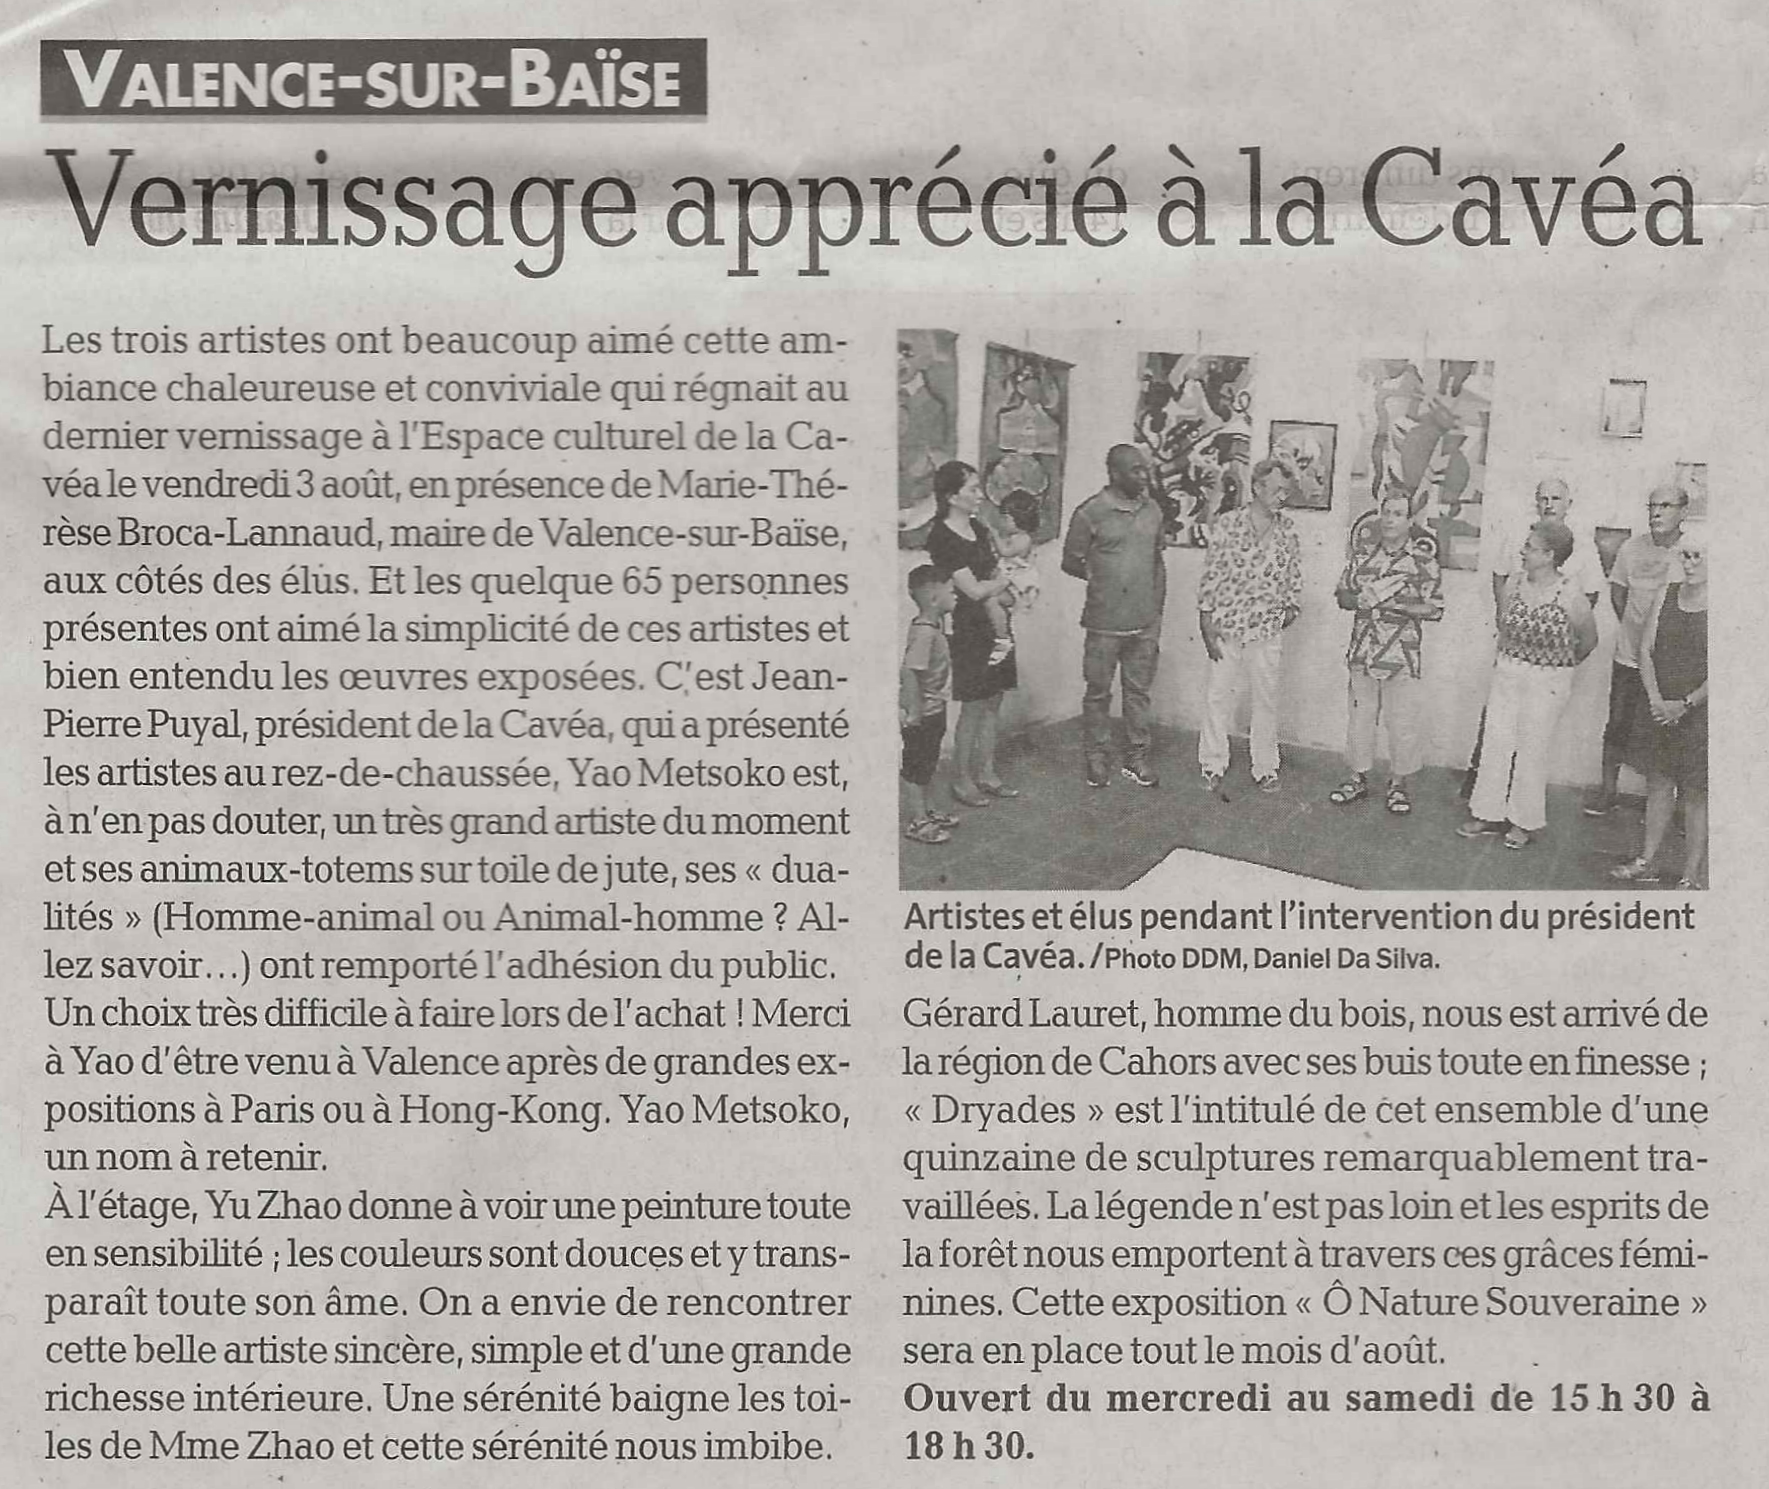 "Vernissage apprécié à la Cavéa", La dépêche du midi, 8/8/2018